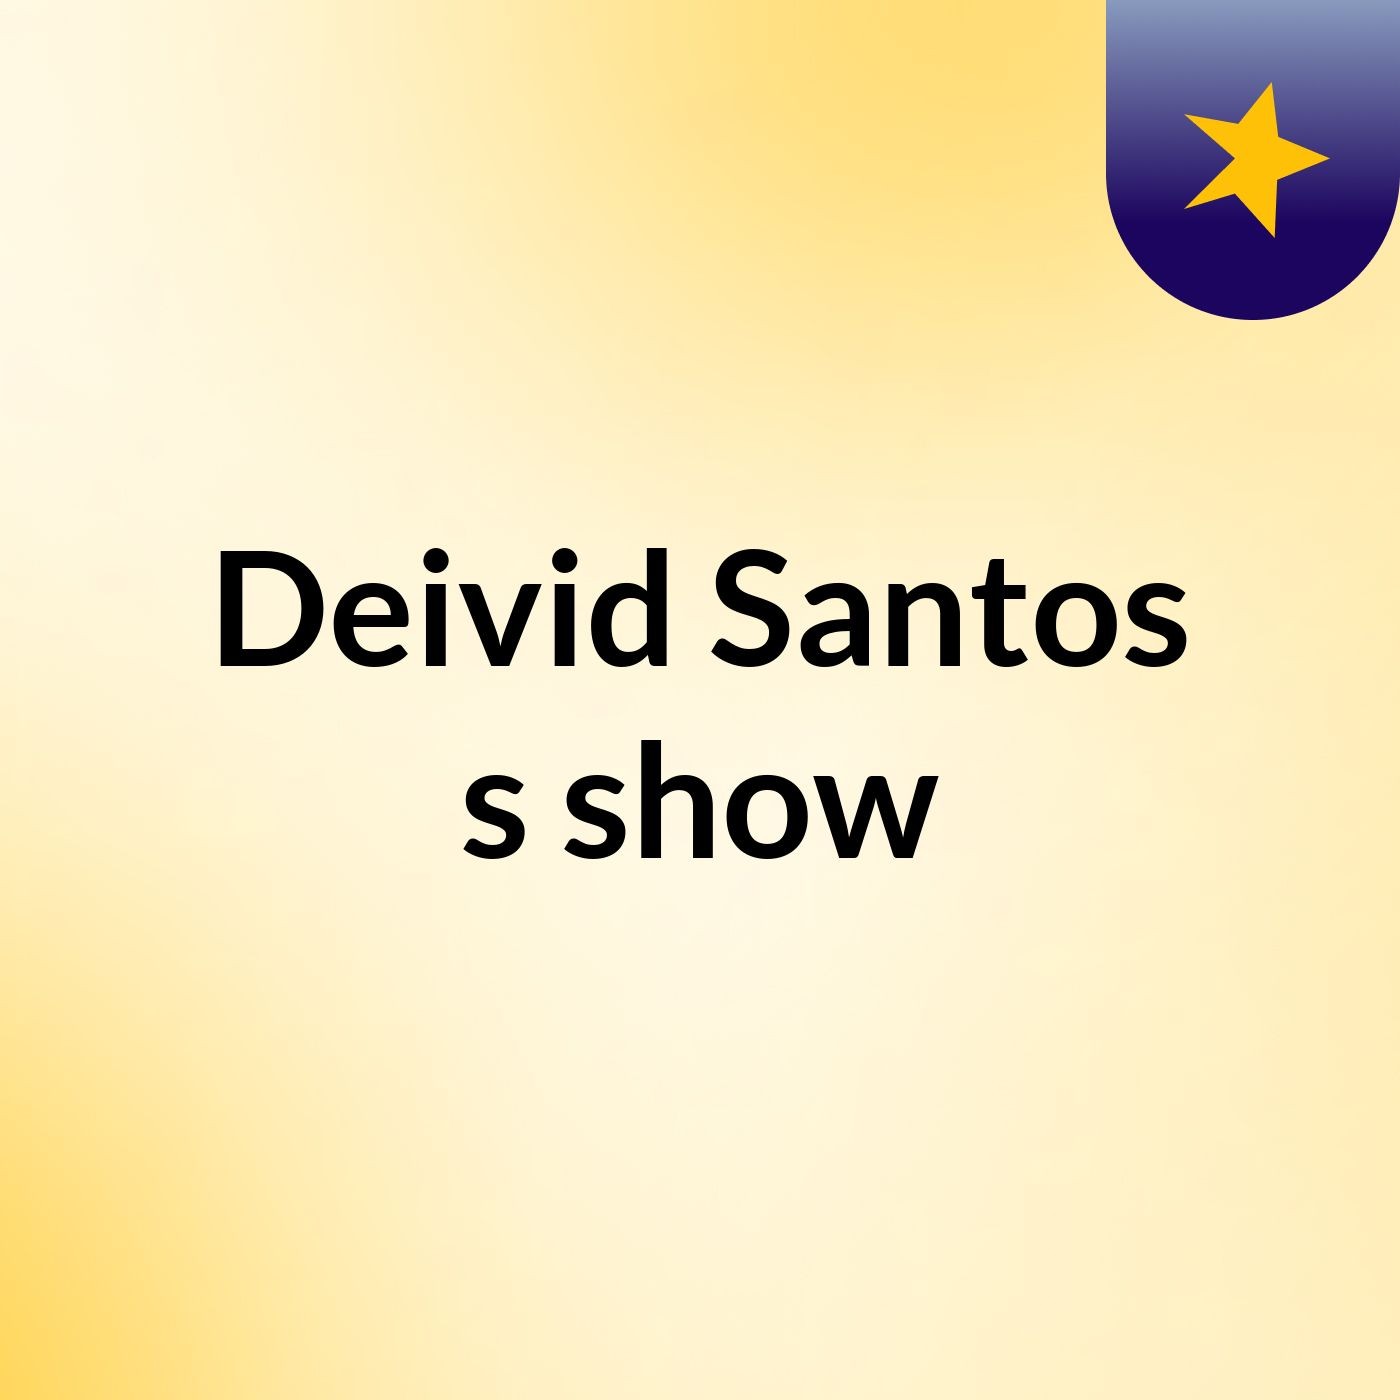 Deivid Santos's show